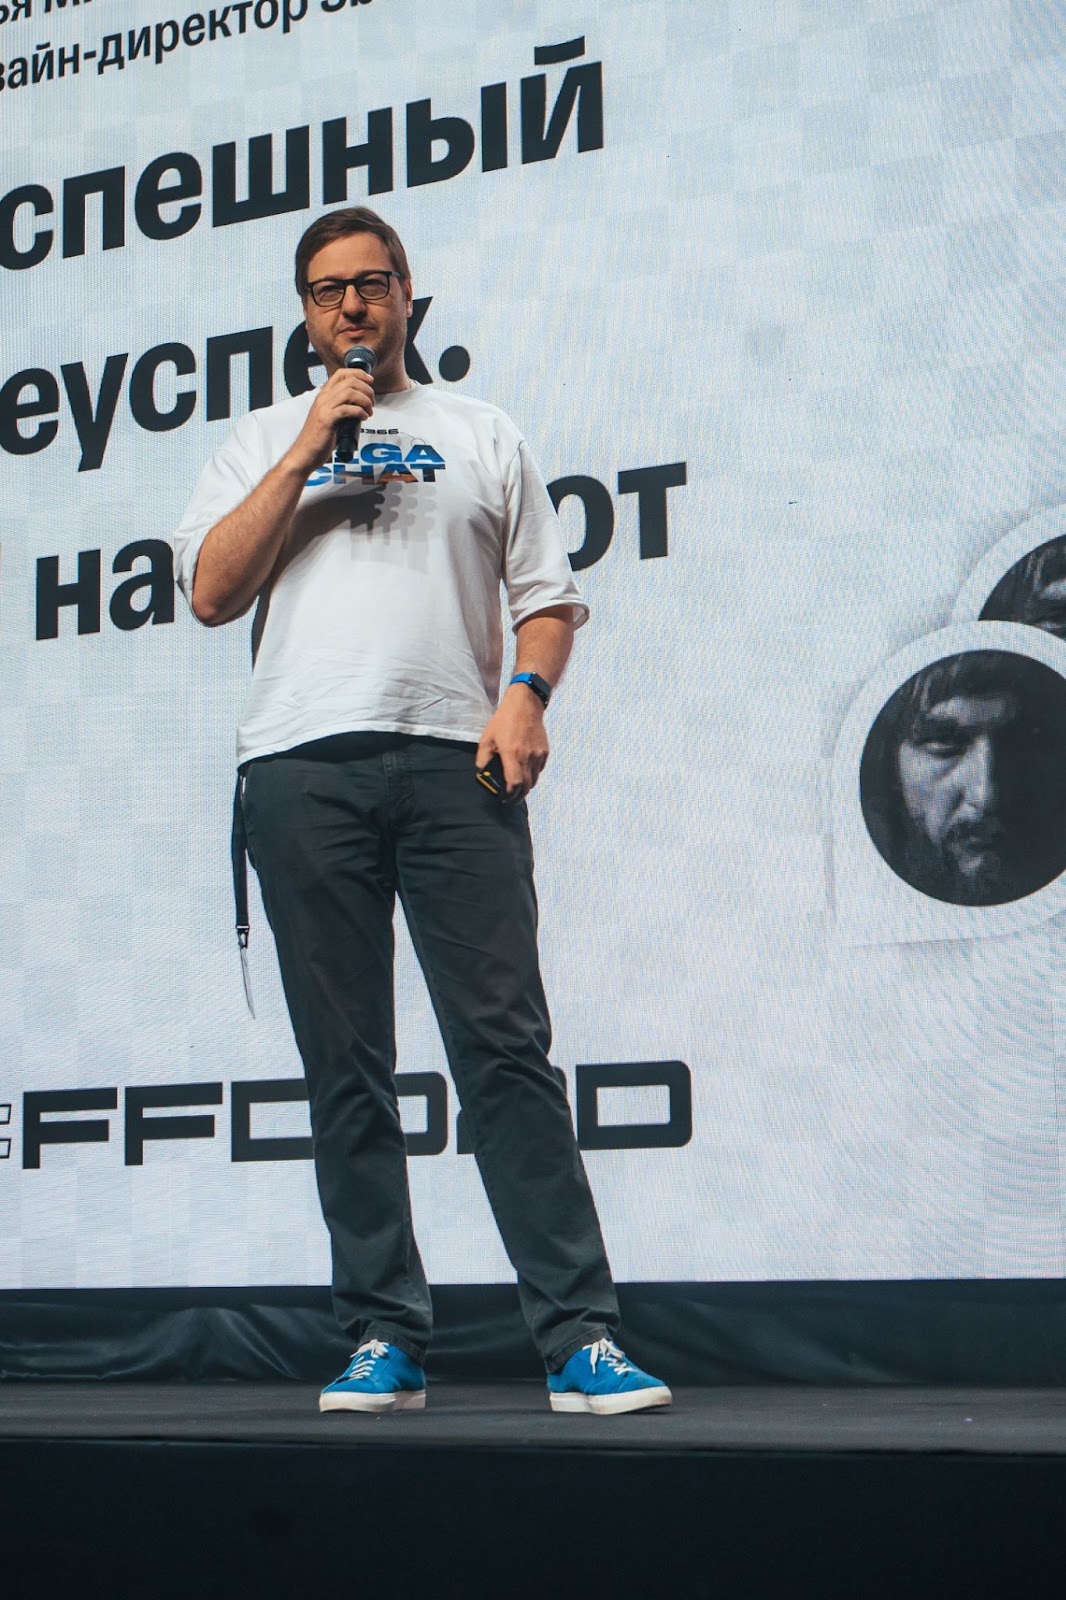 Илья Михайлов, дизайн-директор SberDevices